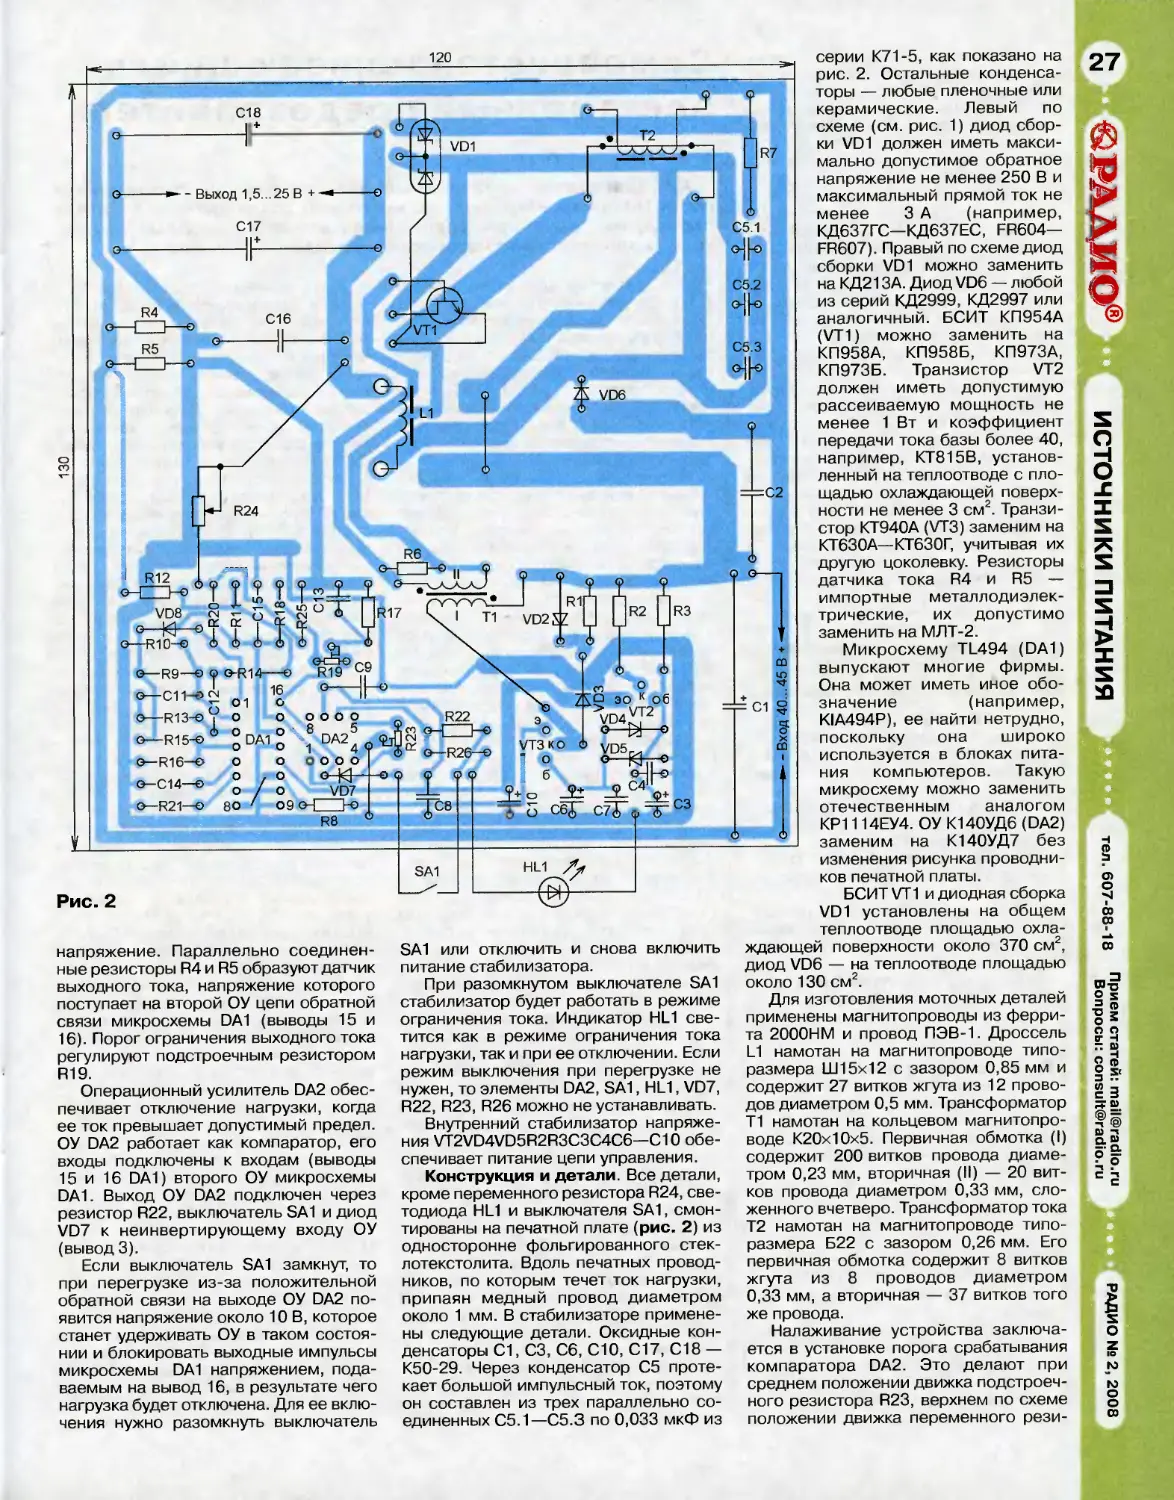 Лабораторный блок питания журнал радио 4 1991